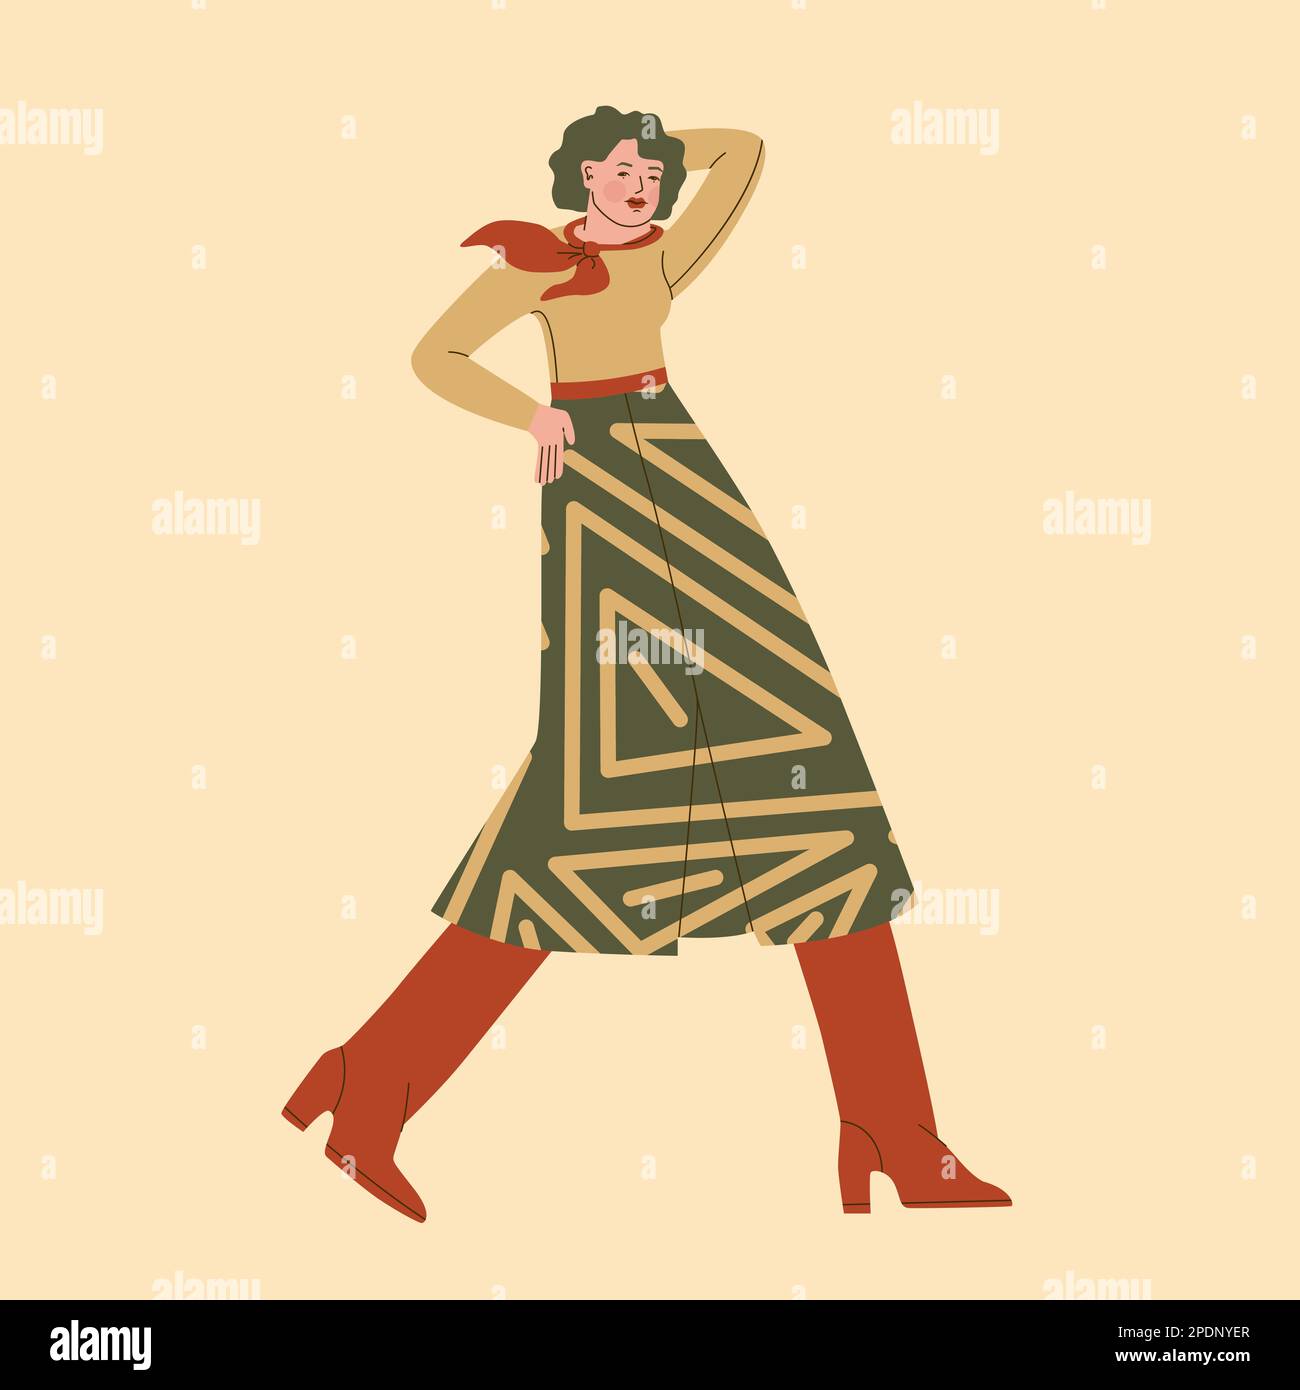 Mode und Stil der 70s Jahre. Süße junge Frau in einem langen Rock und hohen Stiefeln mit einem Schal um den Hals. Vektor-trendige Illustration. Stock Vektor